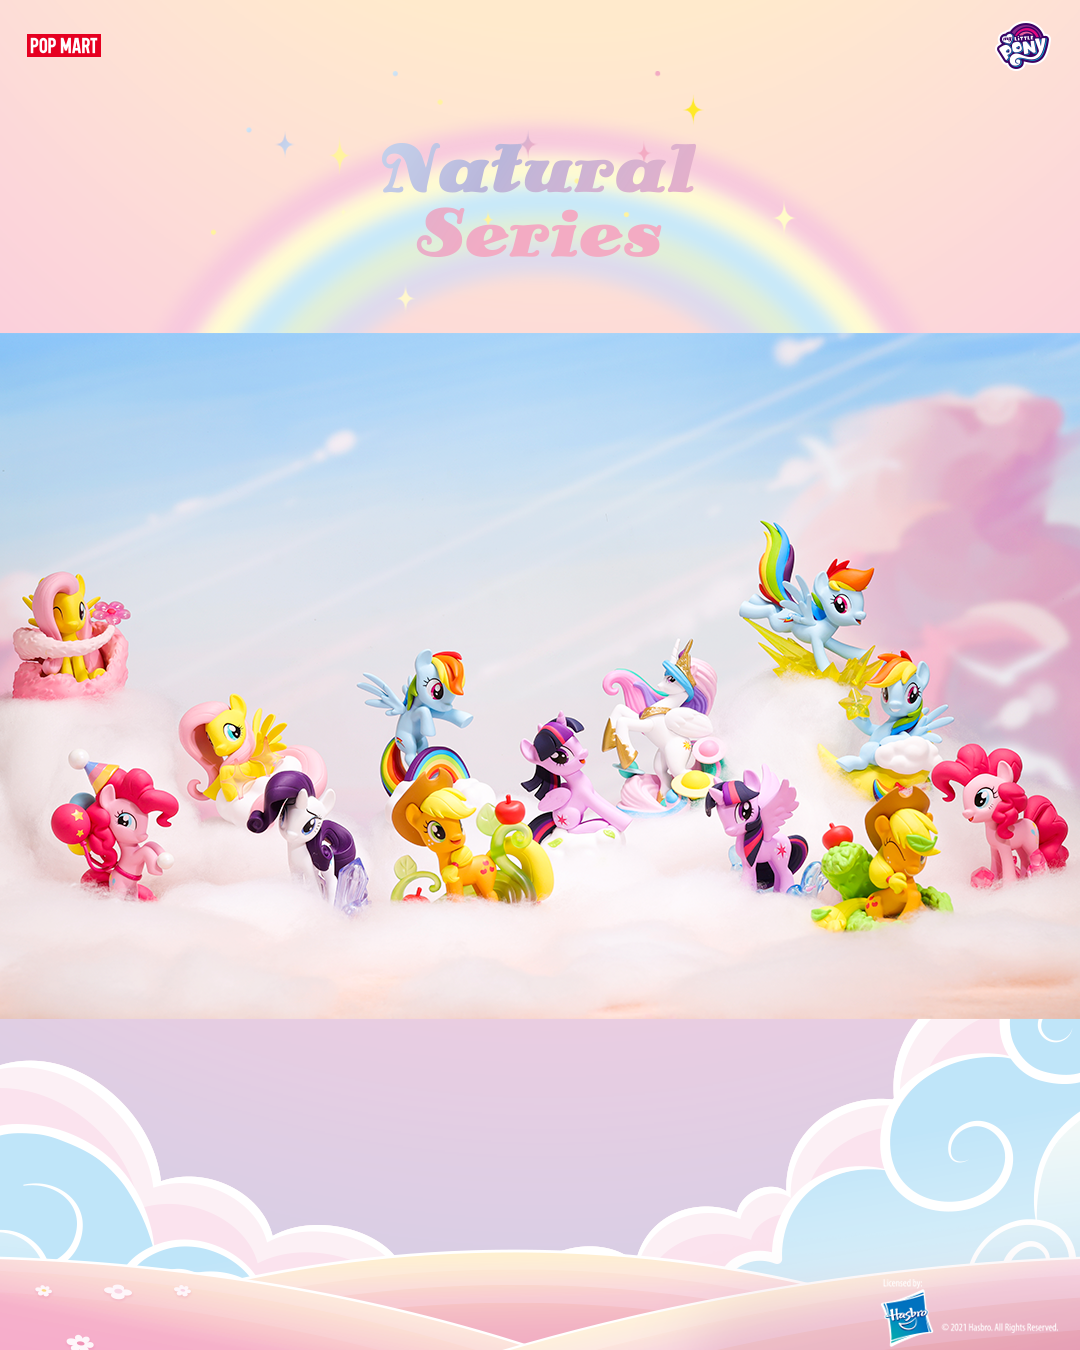 Handvest fantoom bom My Little Pony Natural Blind box Series by Pop Mart – Strangecat Toys